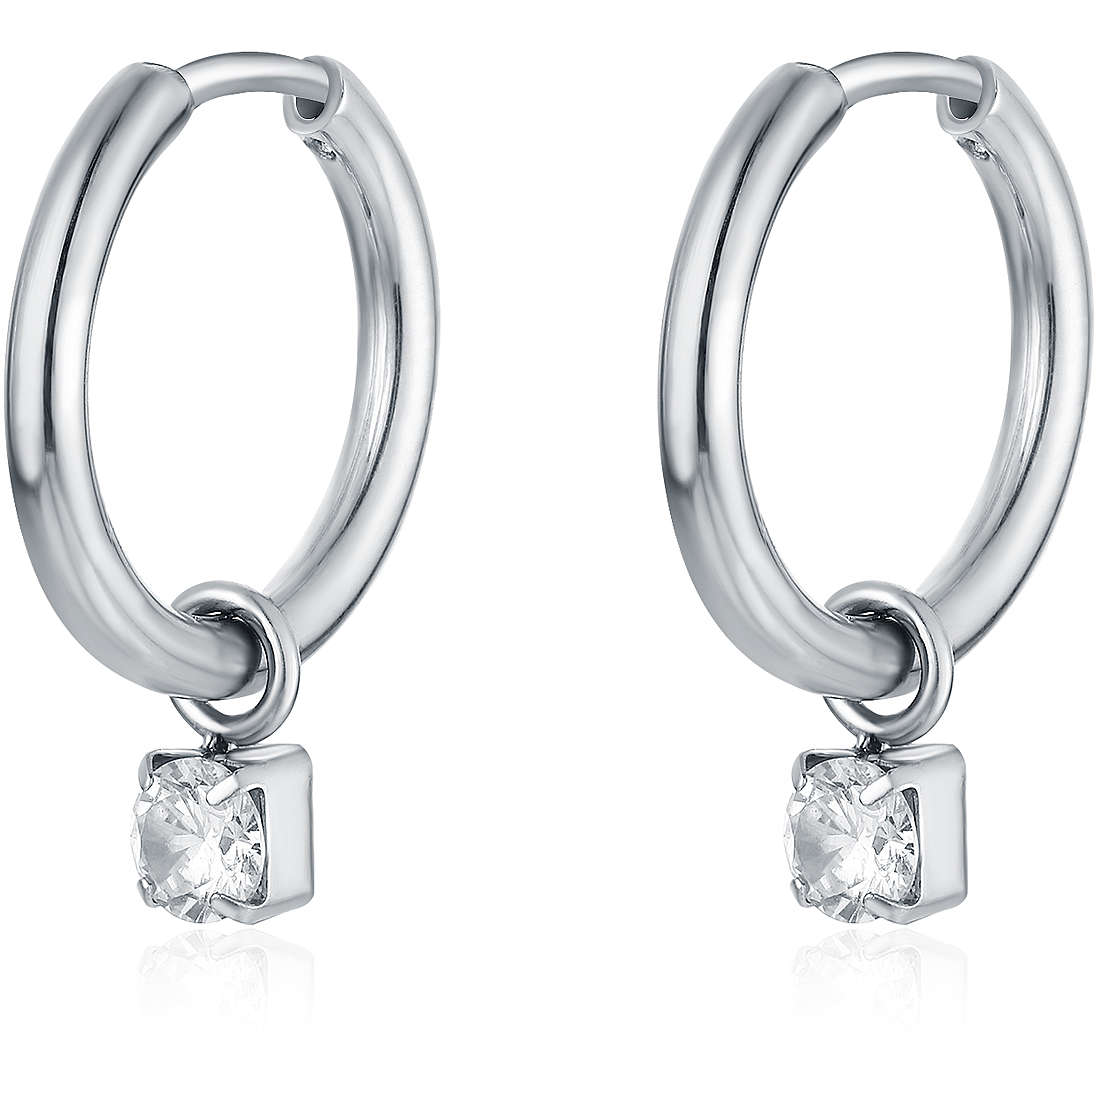 orecchini donna gioielli Brand Crystal 14ER016W